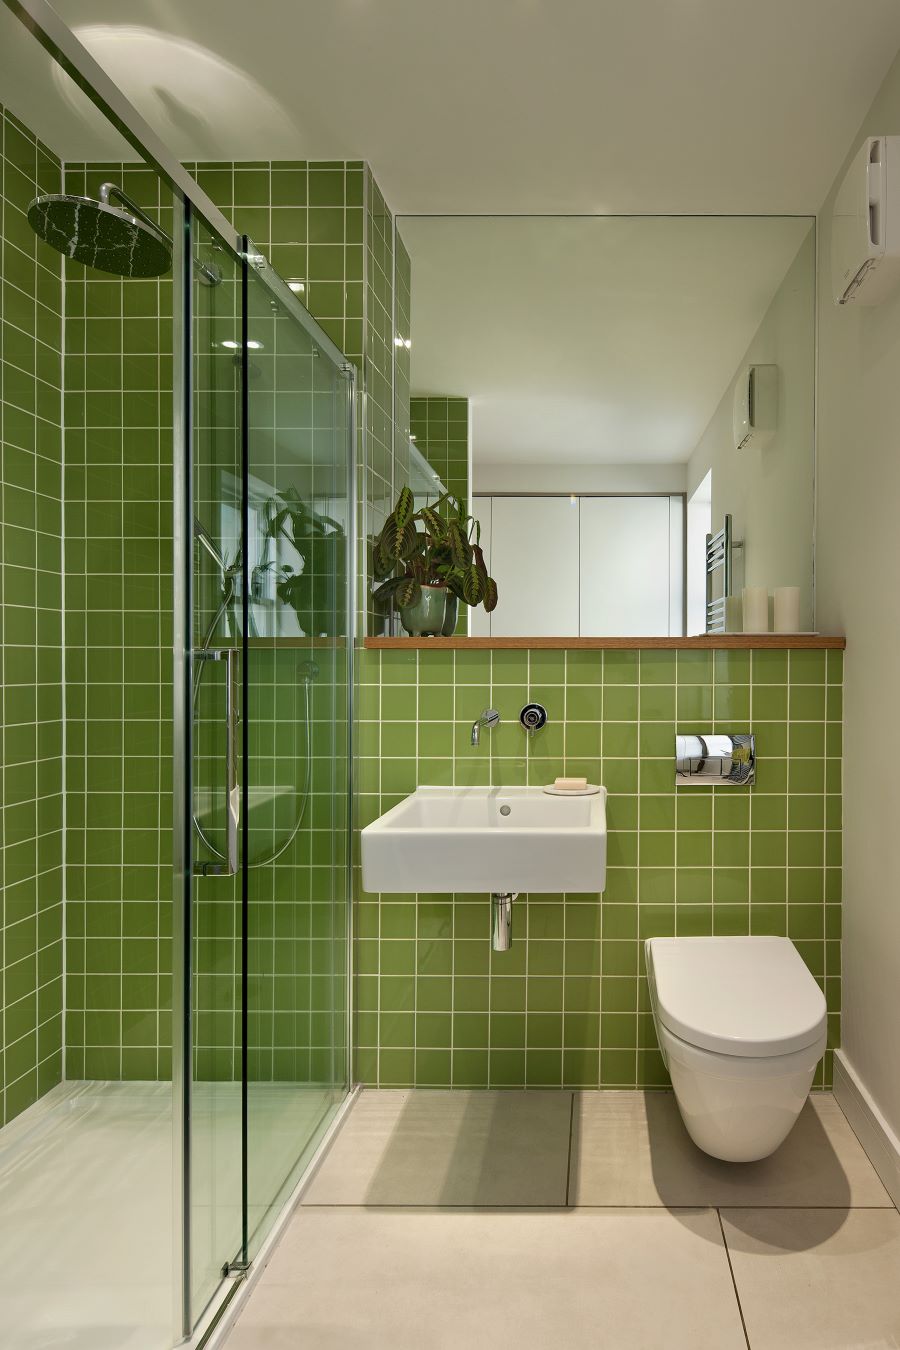 Kúpeľňa so zelenými kachličkami, sprchovým kútom a bielym sanitárnym zariadením.